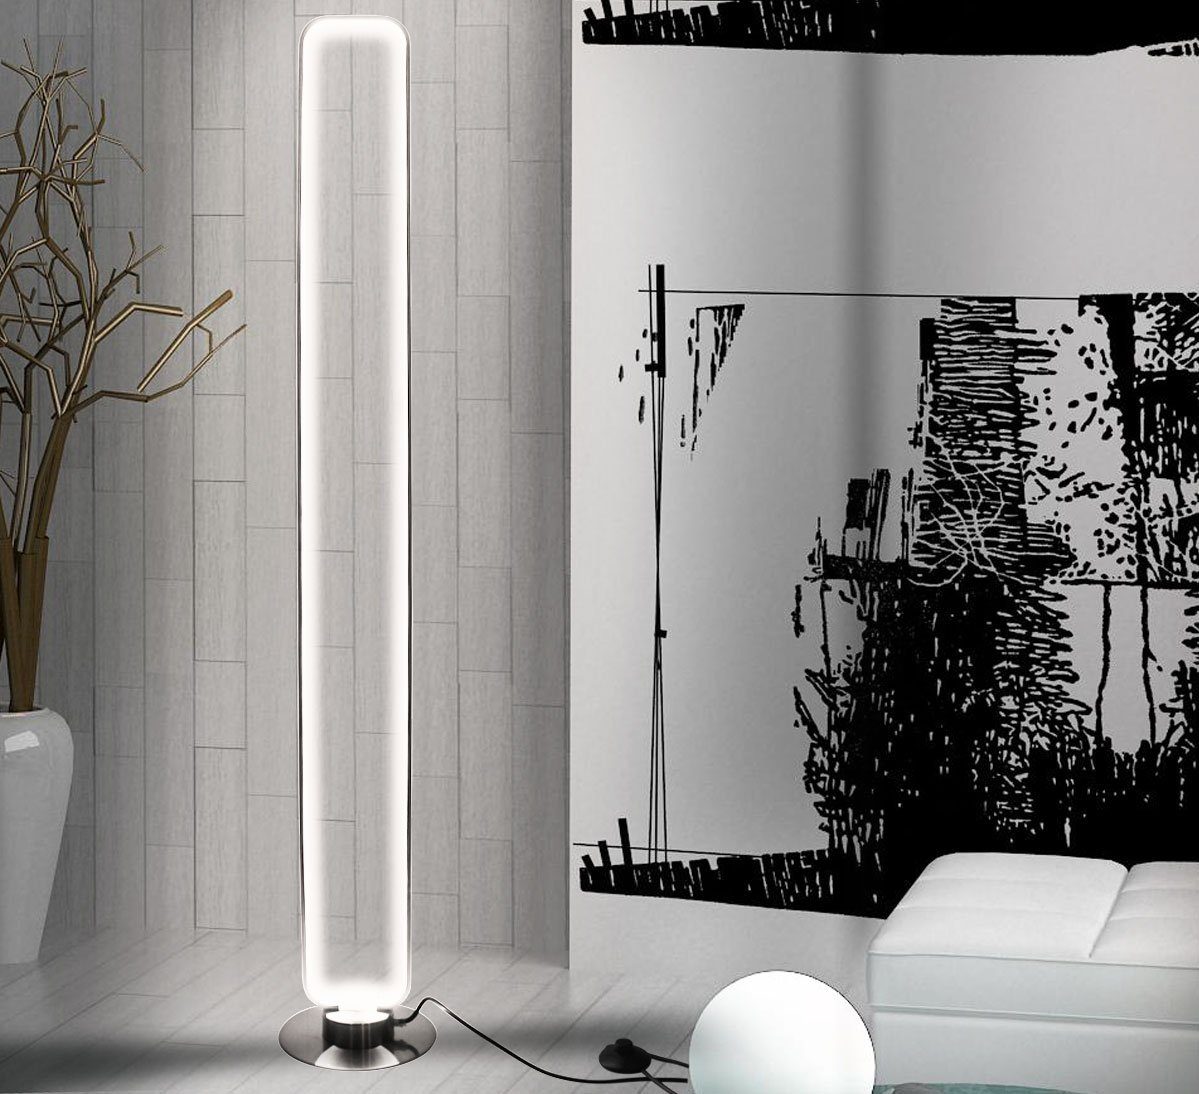 Lewima LED Stehlampe Stehleuchte und mit 25W Groß, Fernbedienung Warmweiß, dimmbar, XXL LED 140cm Standleuchte Speicherfunktion, Standlampe »Diffus« Bodenlampe